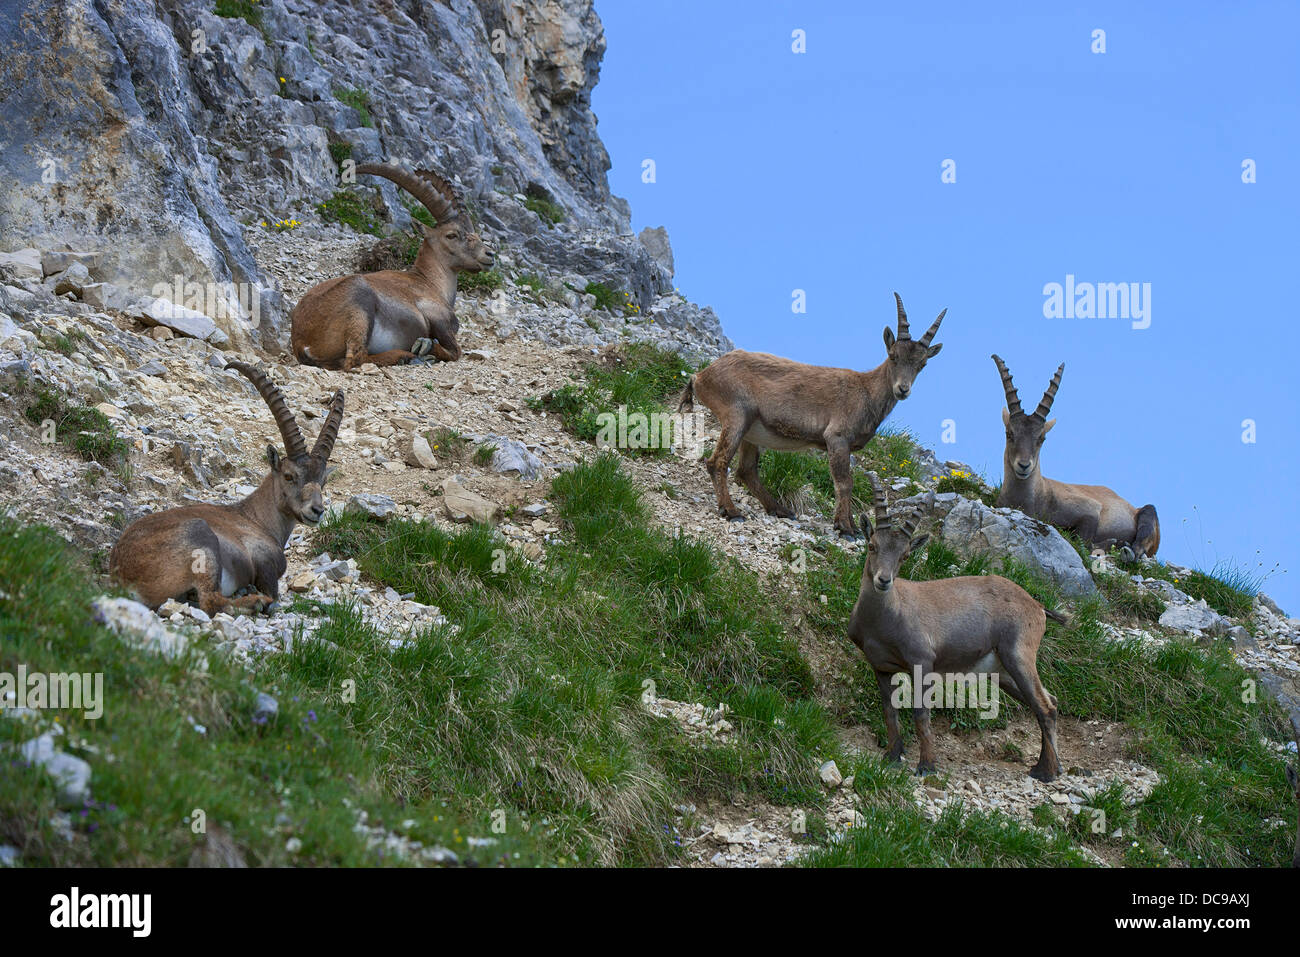 Alpine ibexes or Steinbocks (Capra ibex) Stock Photo